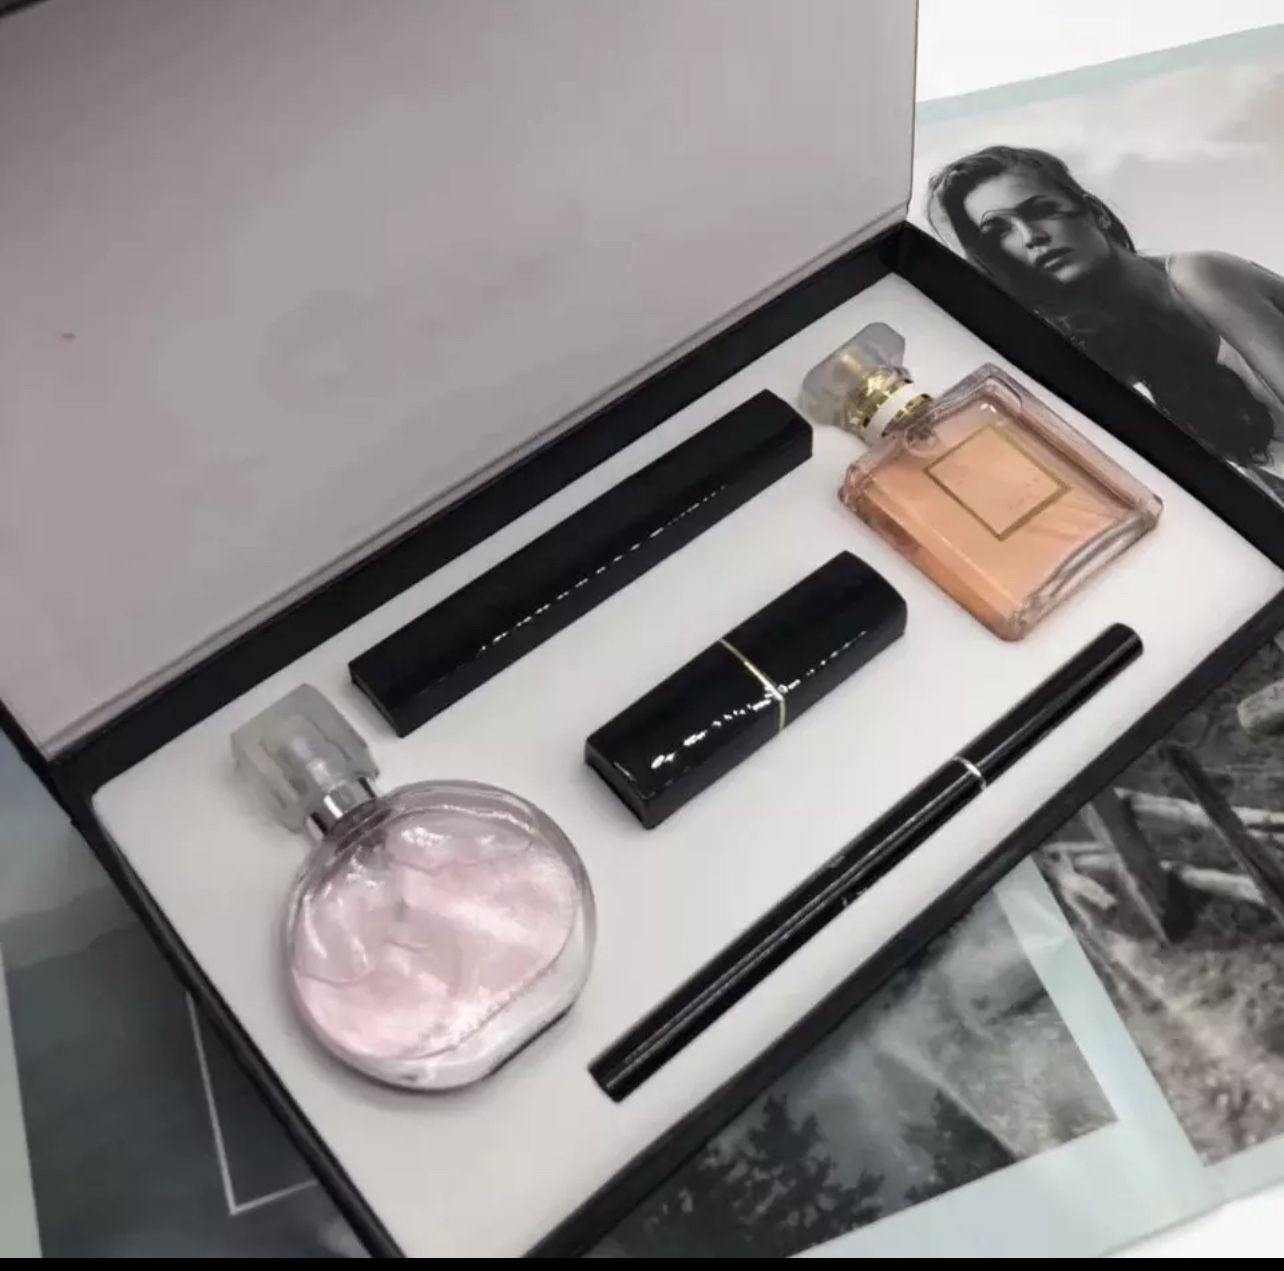 CHANEL Platinum Egoiste Fragrances for Men for sale